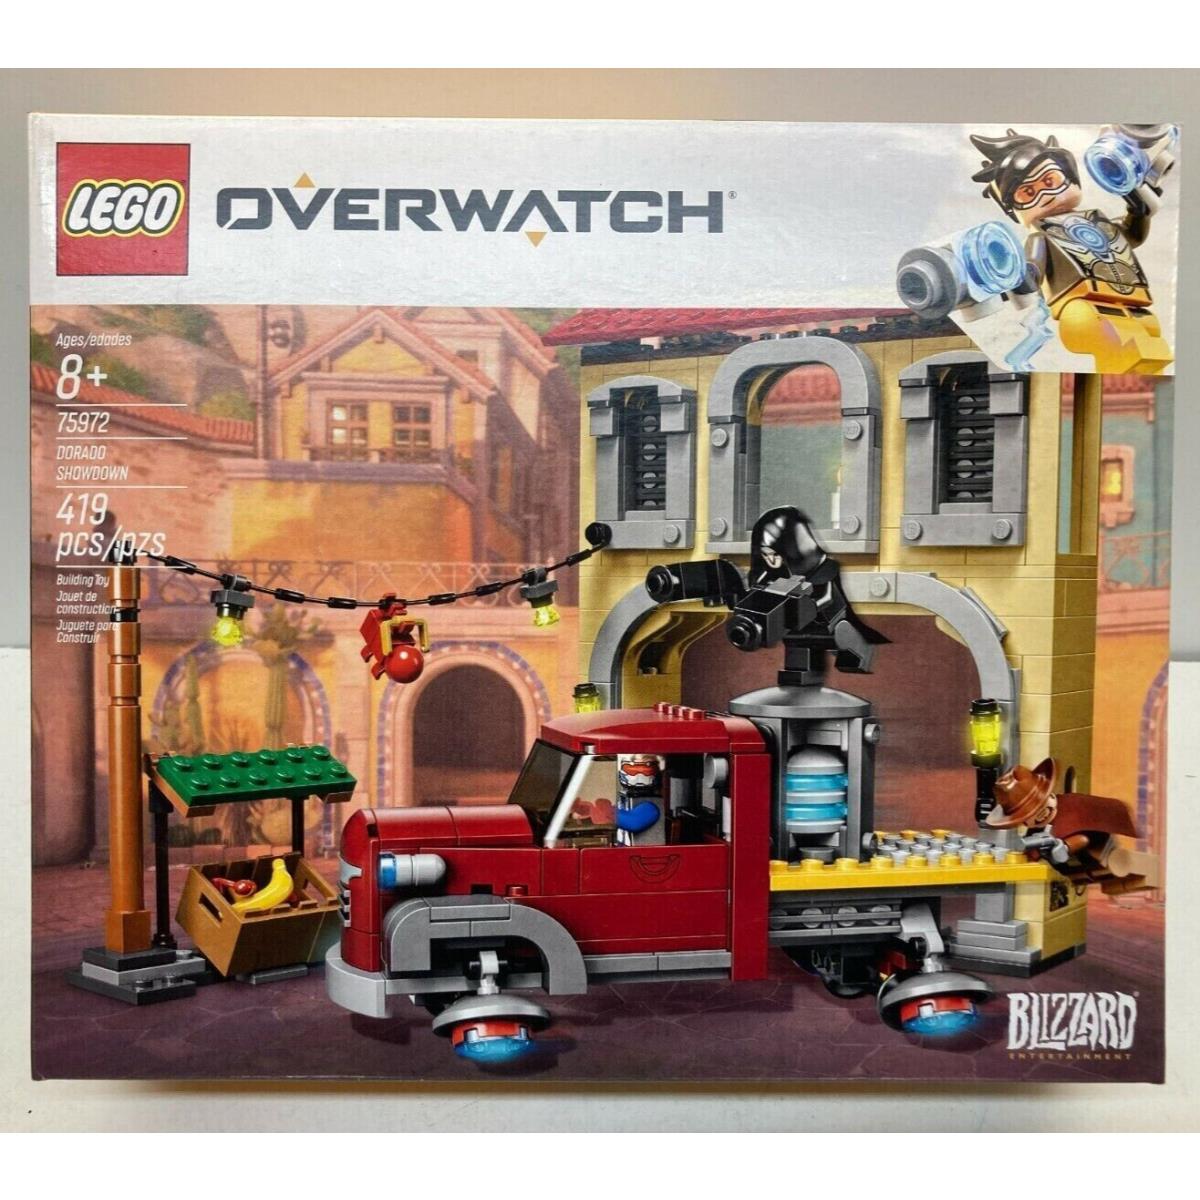 Lego Overwatch Dorado Showdown 75972 Building Kit 419 Pcs Retired Set